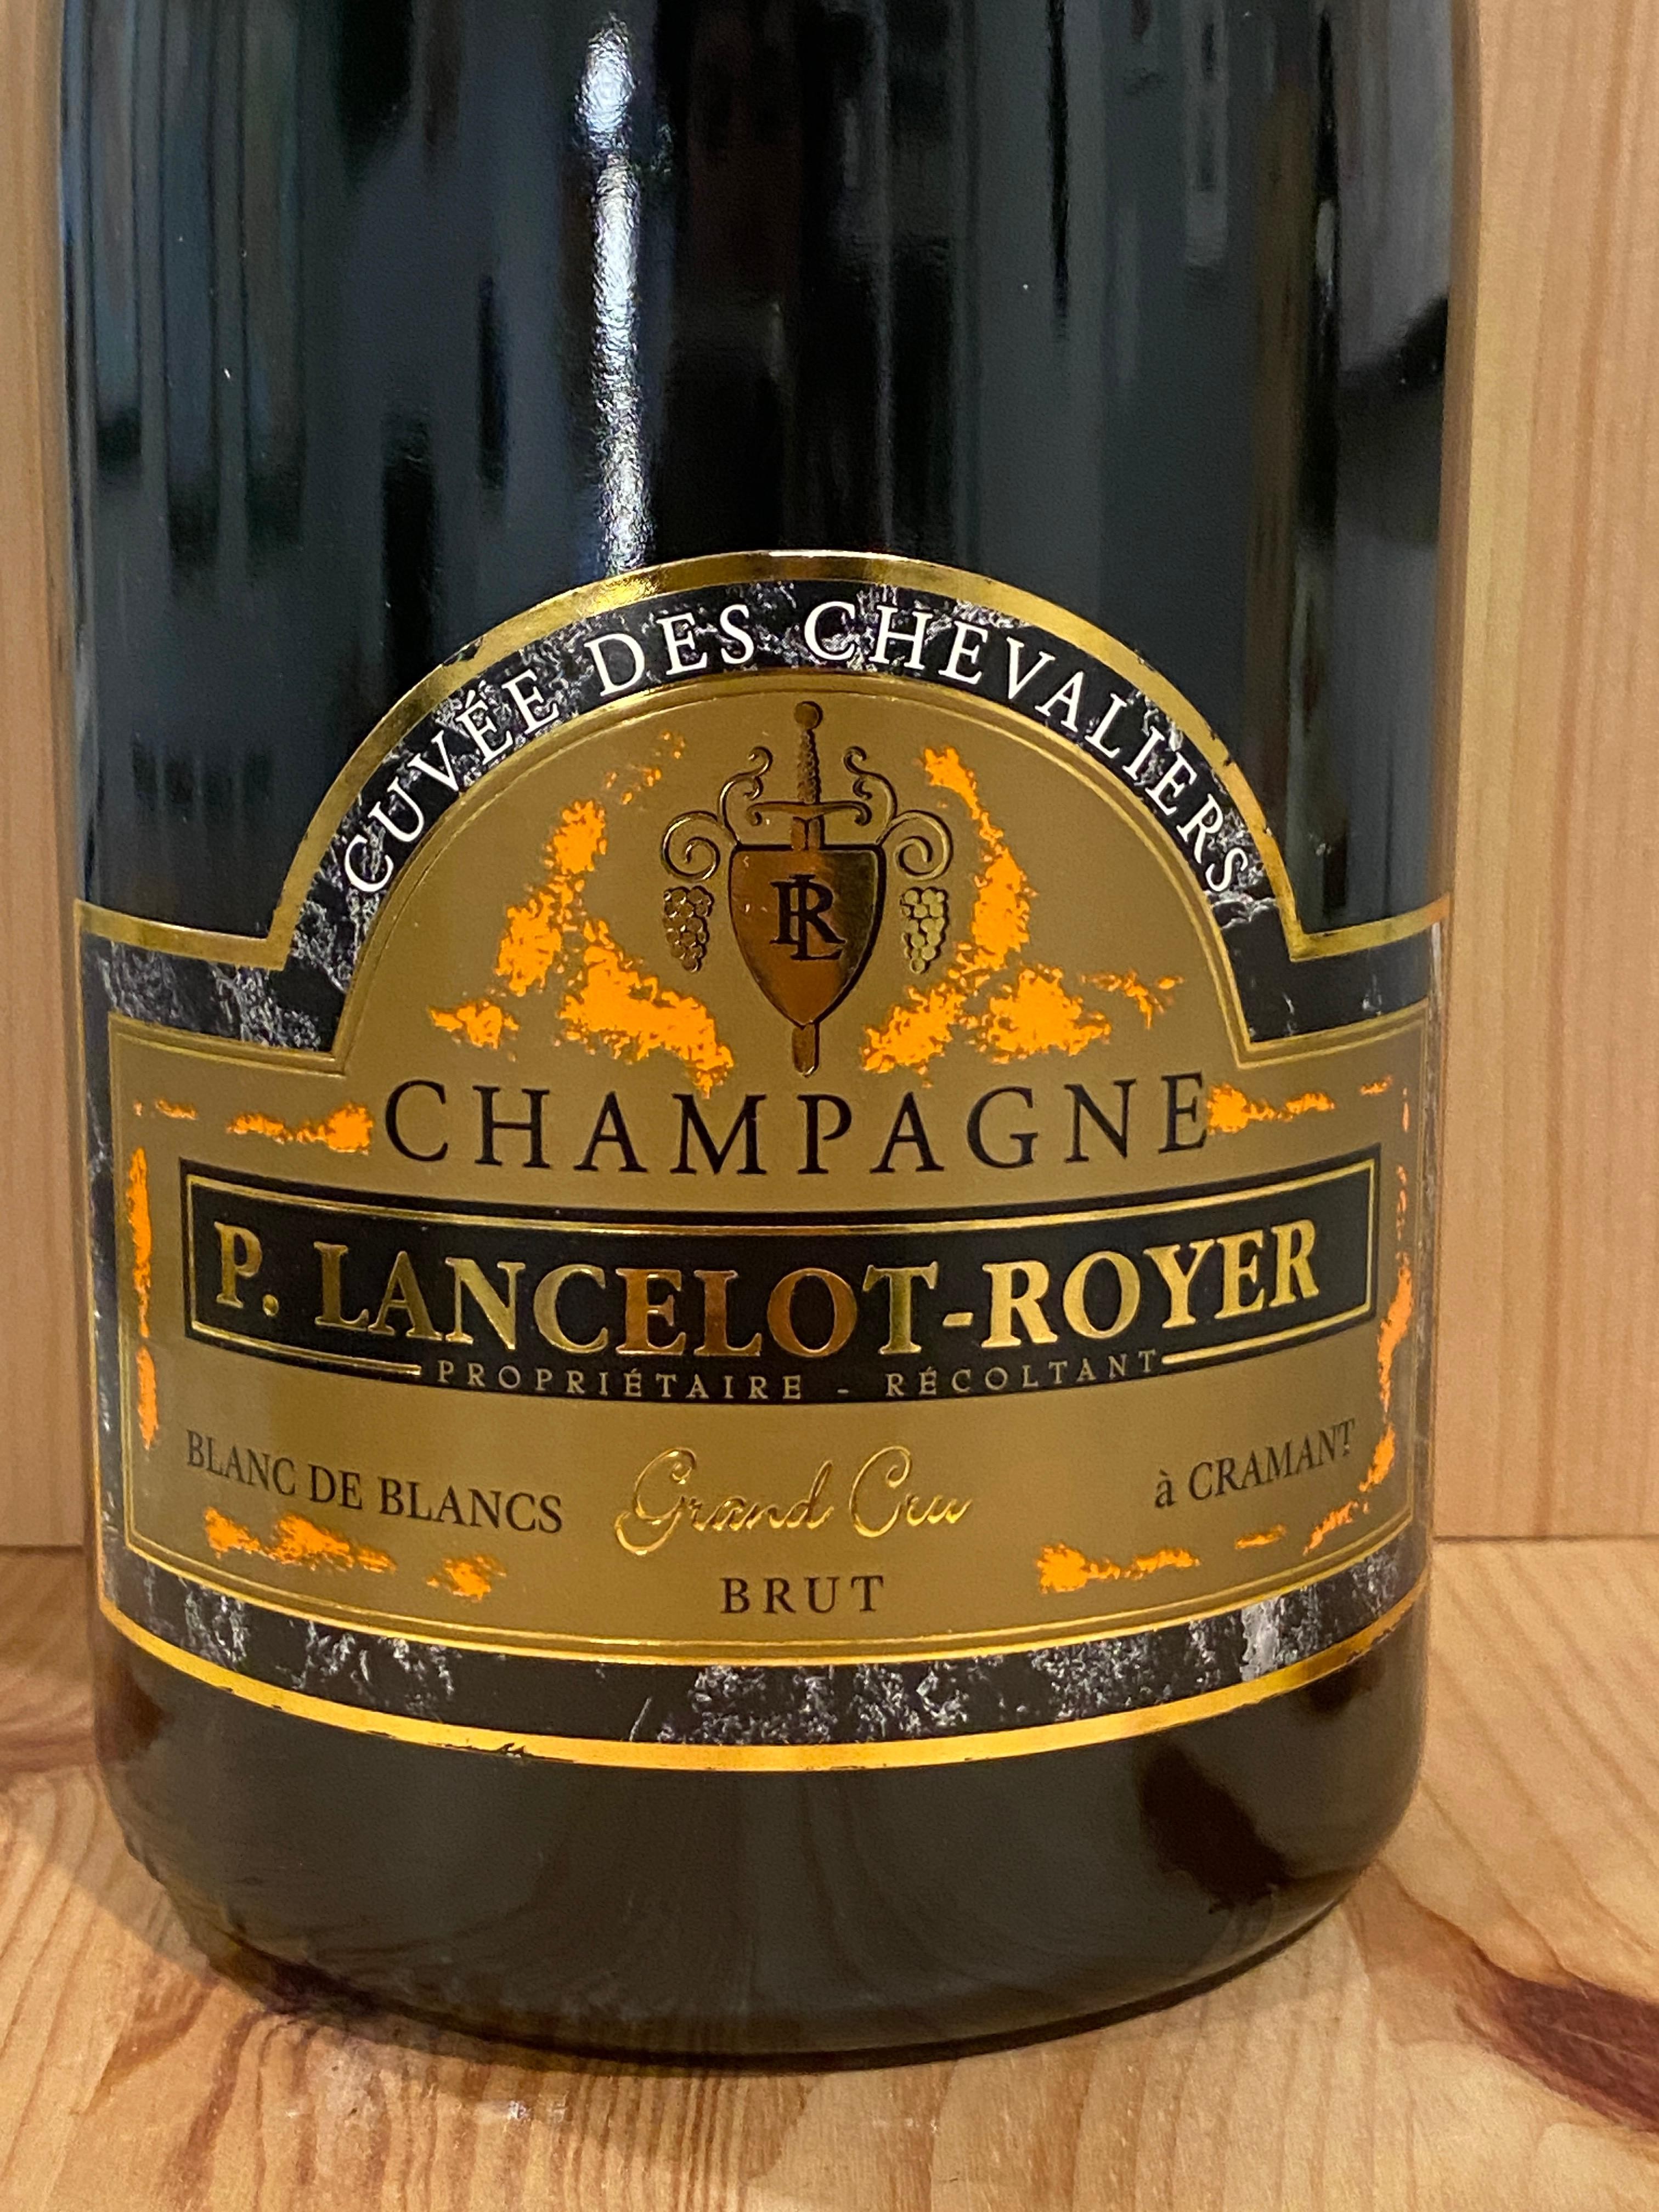 Champagne P. Lancelot-Royer "Cuvée des Chevaliers" Grand Cru Blanc de Blancs Brut NV: Cramant, Champagne, France (1.5L)